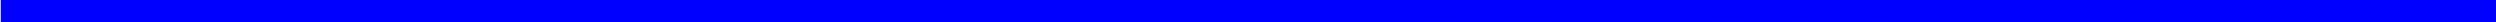 Modrá Čára1